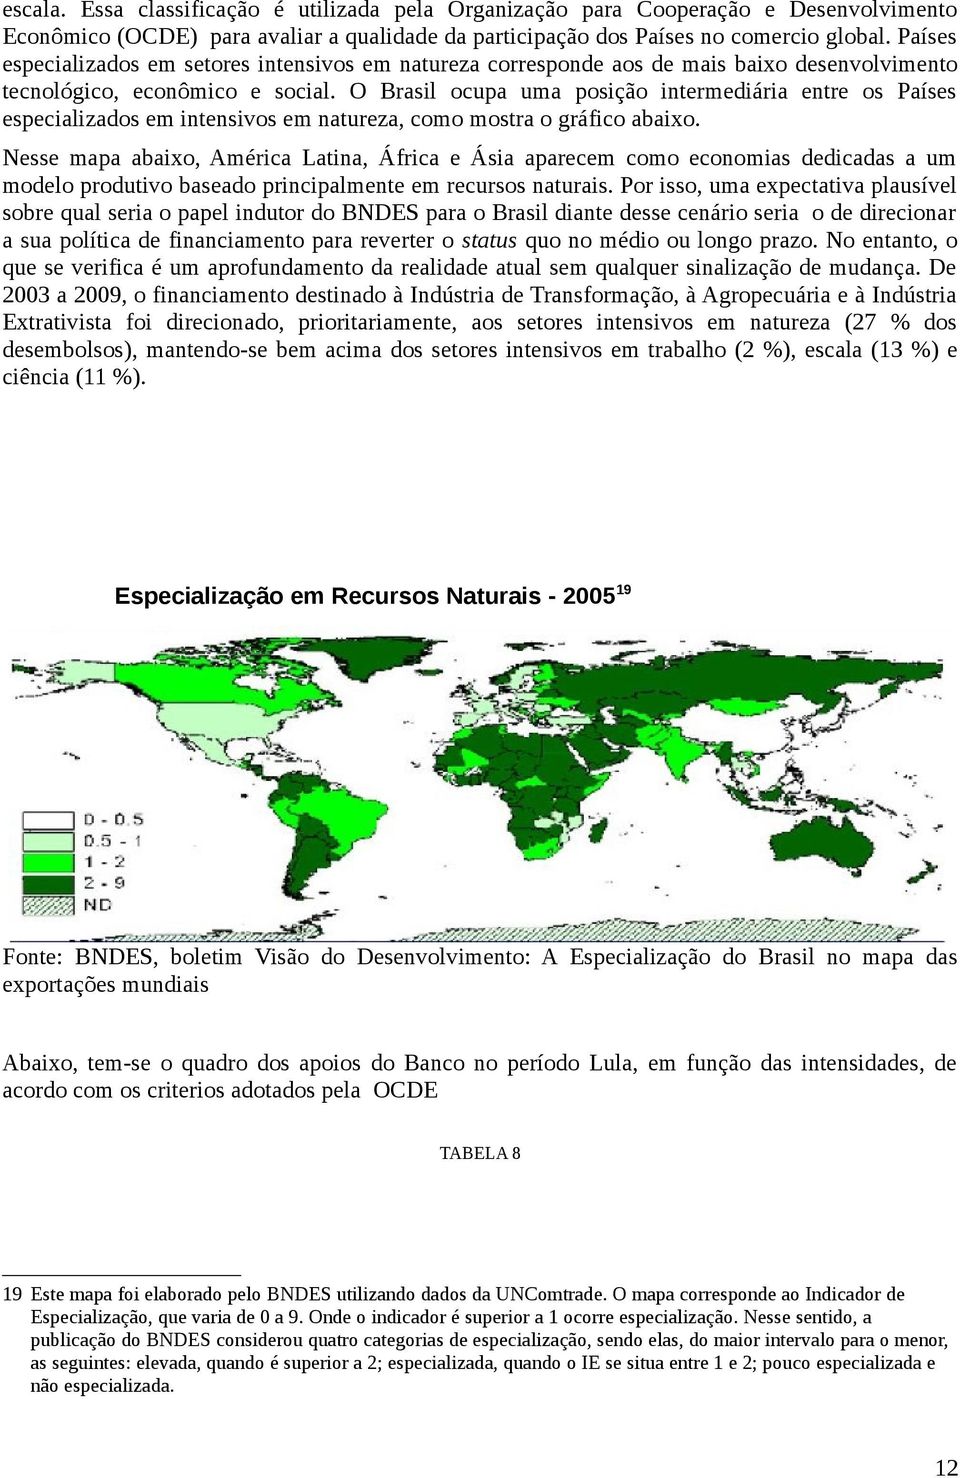 O Brasil ocupa uma posição intermediária entre os Países especializados em intensivos em natureza, como mostra o gráfico abaixo.